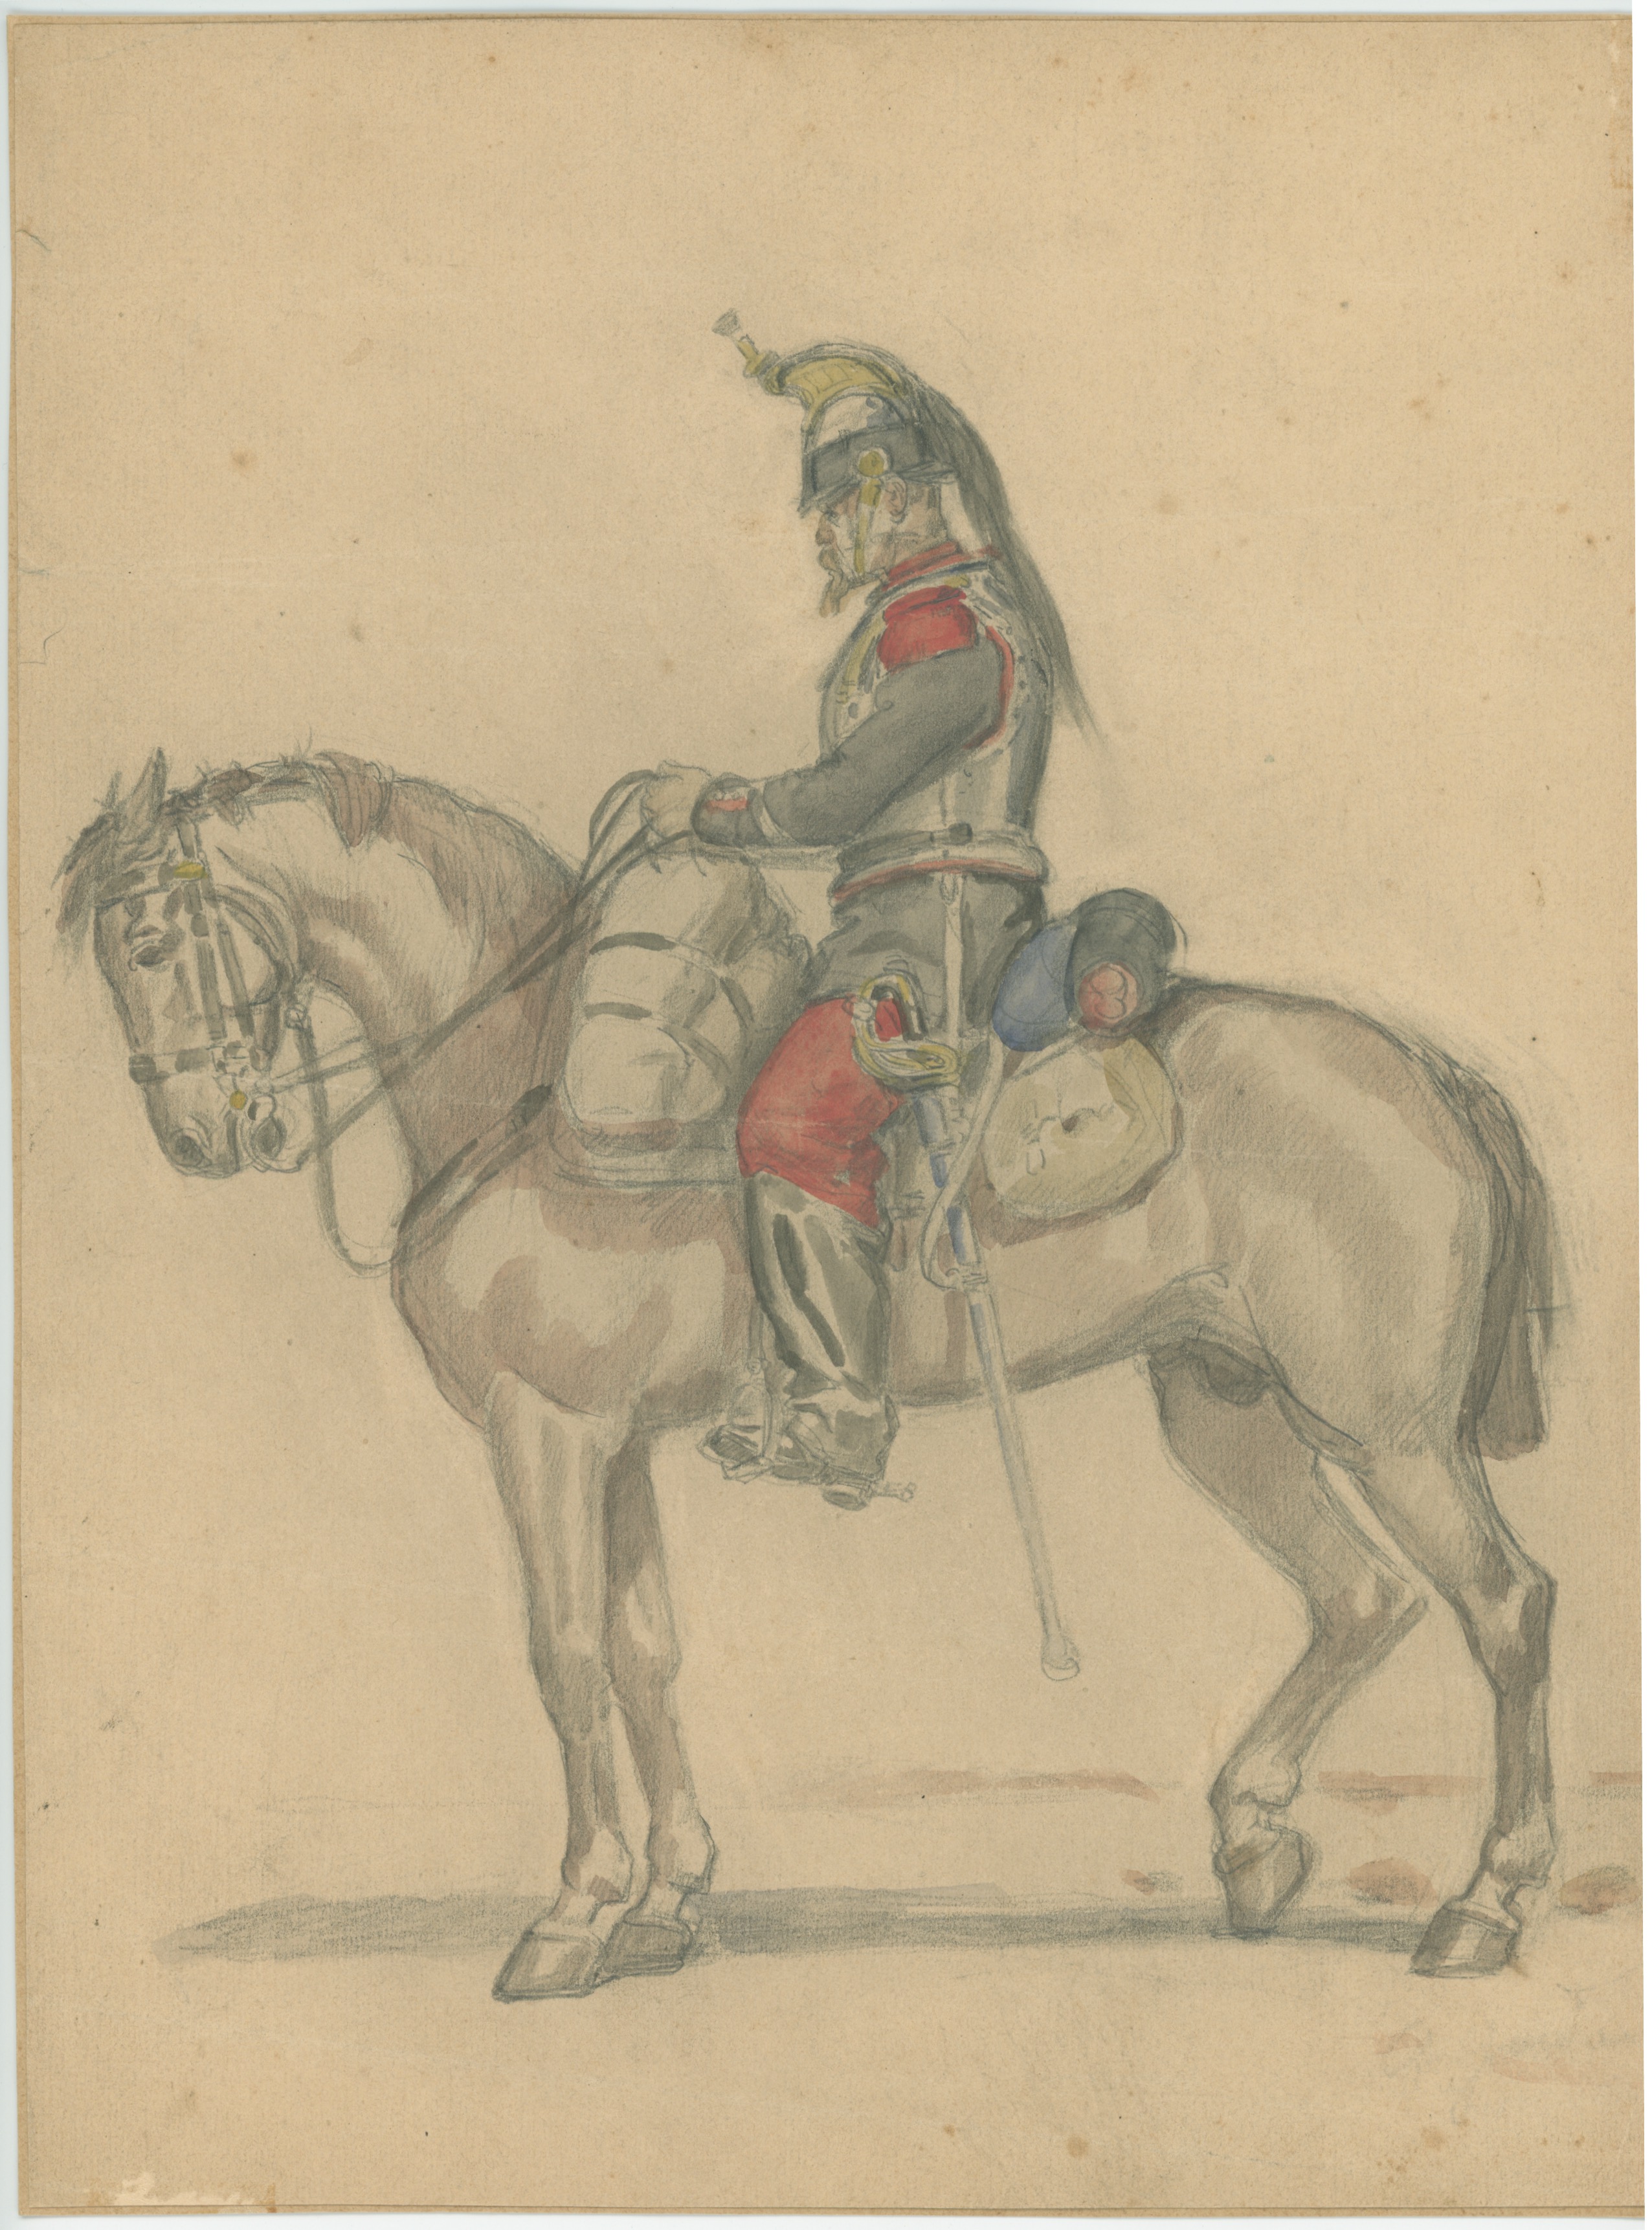 Dessin crayon rehaussé couleurs - Cuirassier de la ligne - 1860 - Uniforme - Second Empire - Napoléon III - 1870